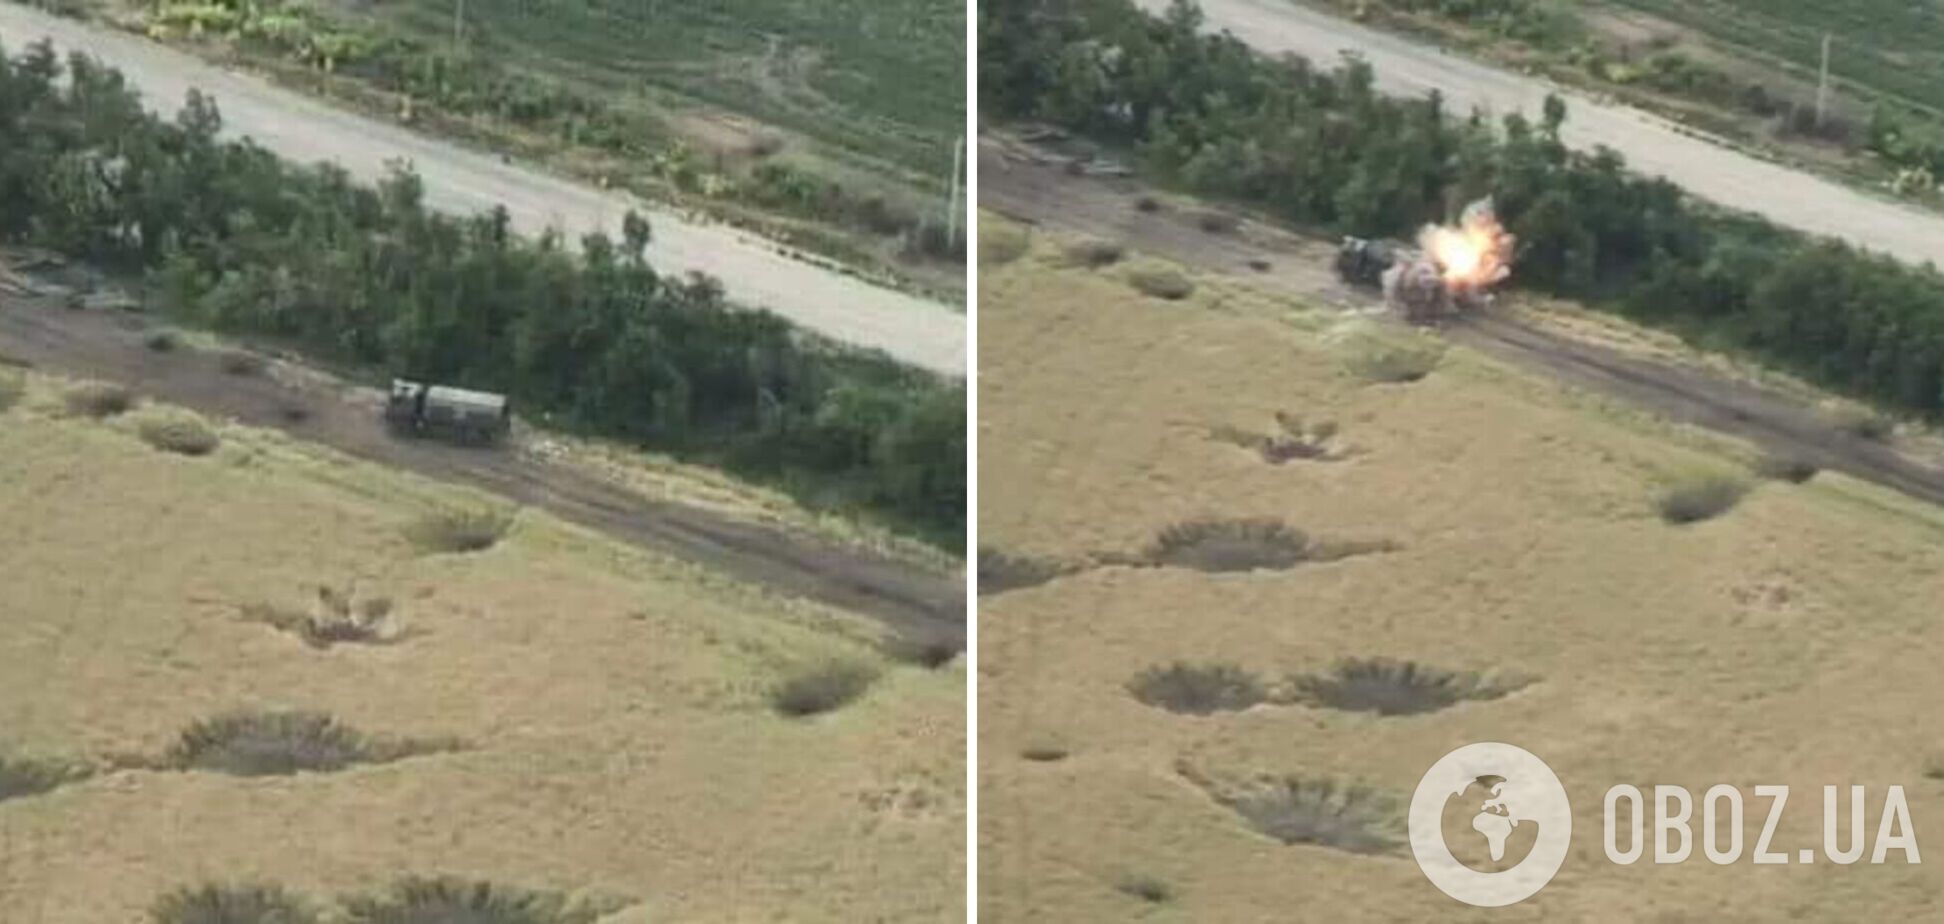 'Приїхав, постояв, полетів': у мережі показали 'долю' авто окупантів з БК у трьох фото